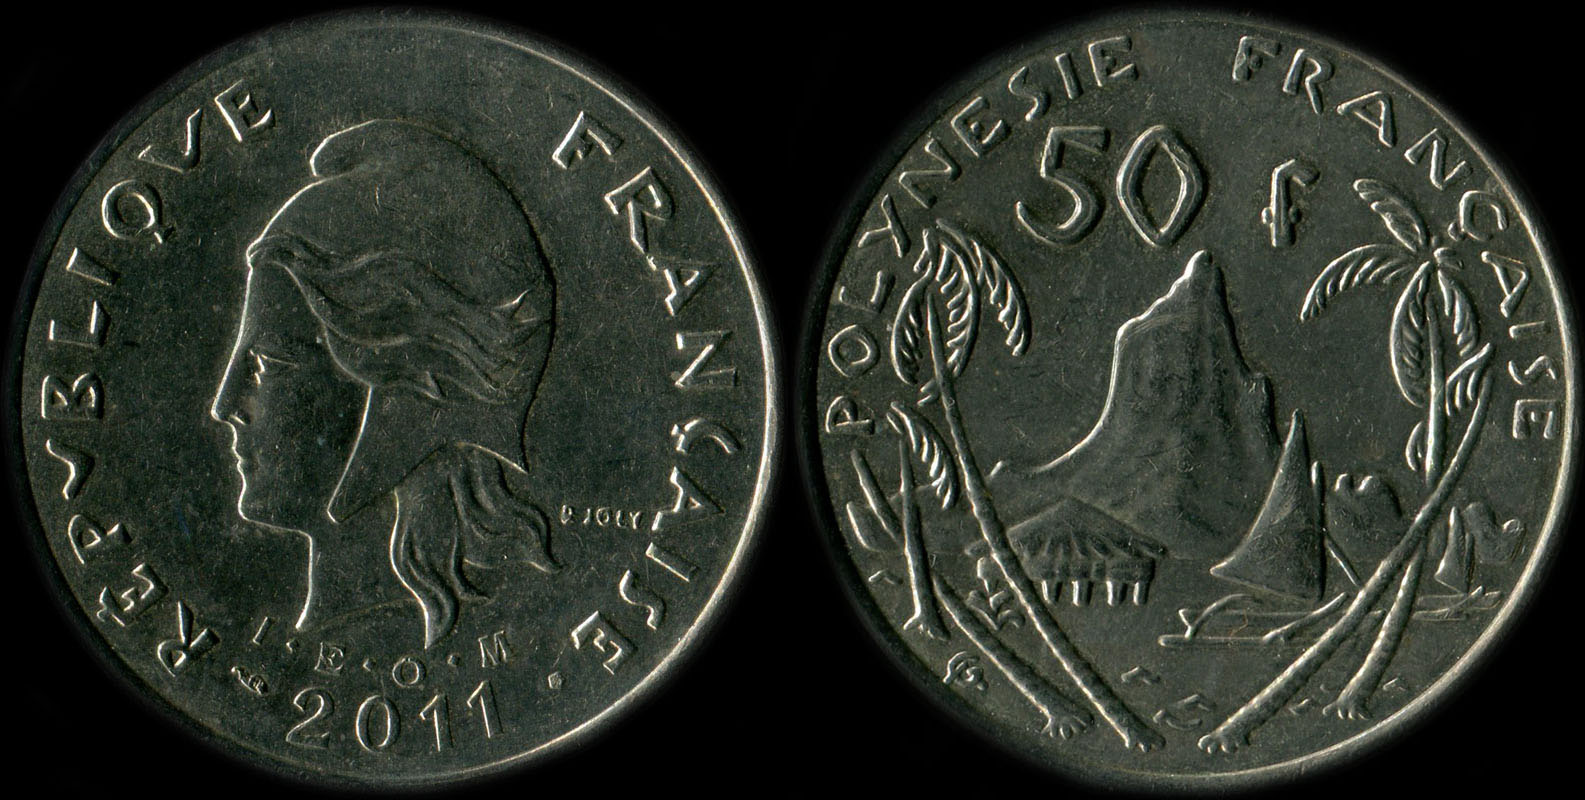 Pice de 50 francs 2011 Polynsie franaise I.E.O.M.